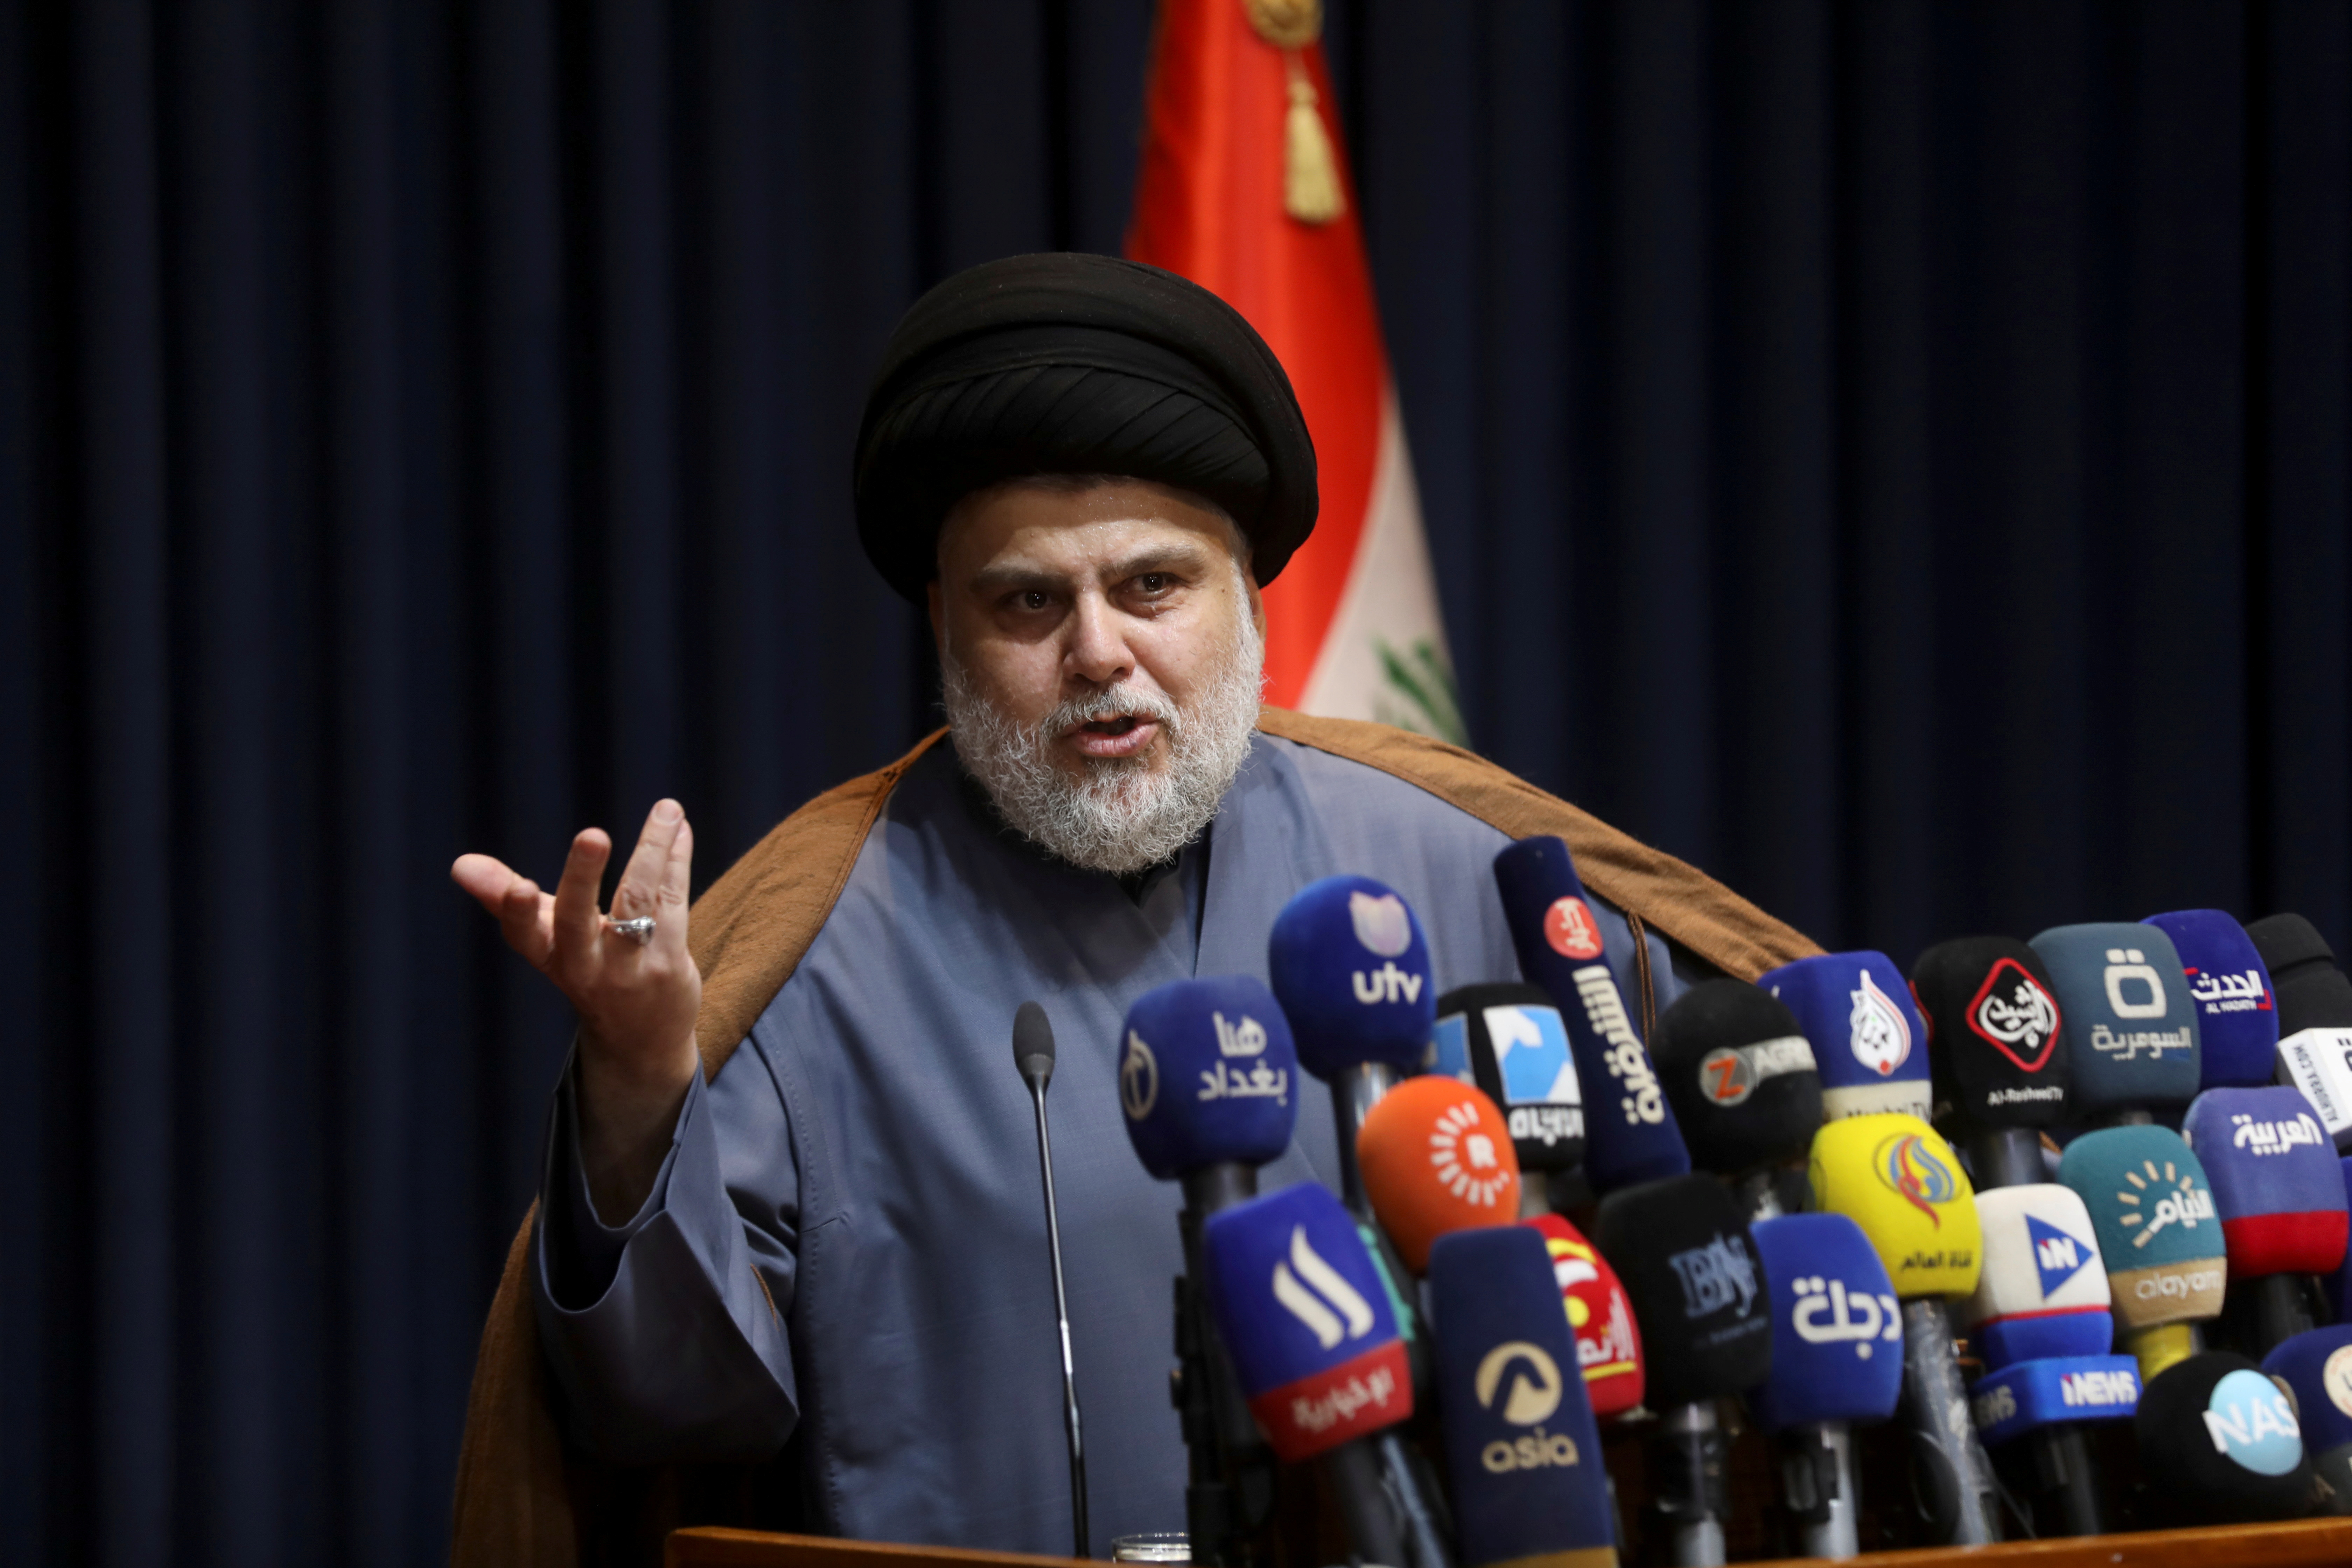 Iraqi Shi'ite cleric Muqtada al-Sadr speaks during a news conference in Najaf, Iraq, November 18, 2021 REUTERS/Alaa Al-Marjani